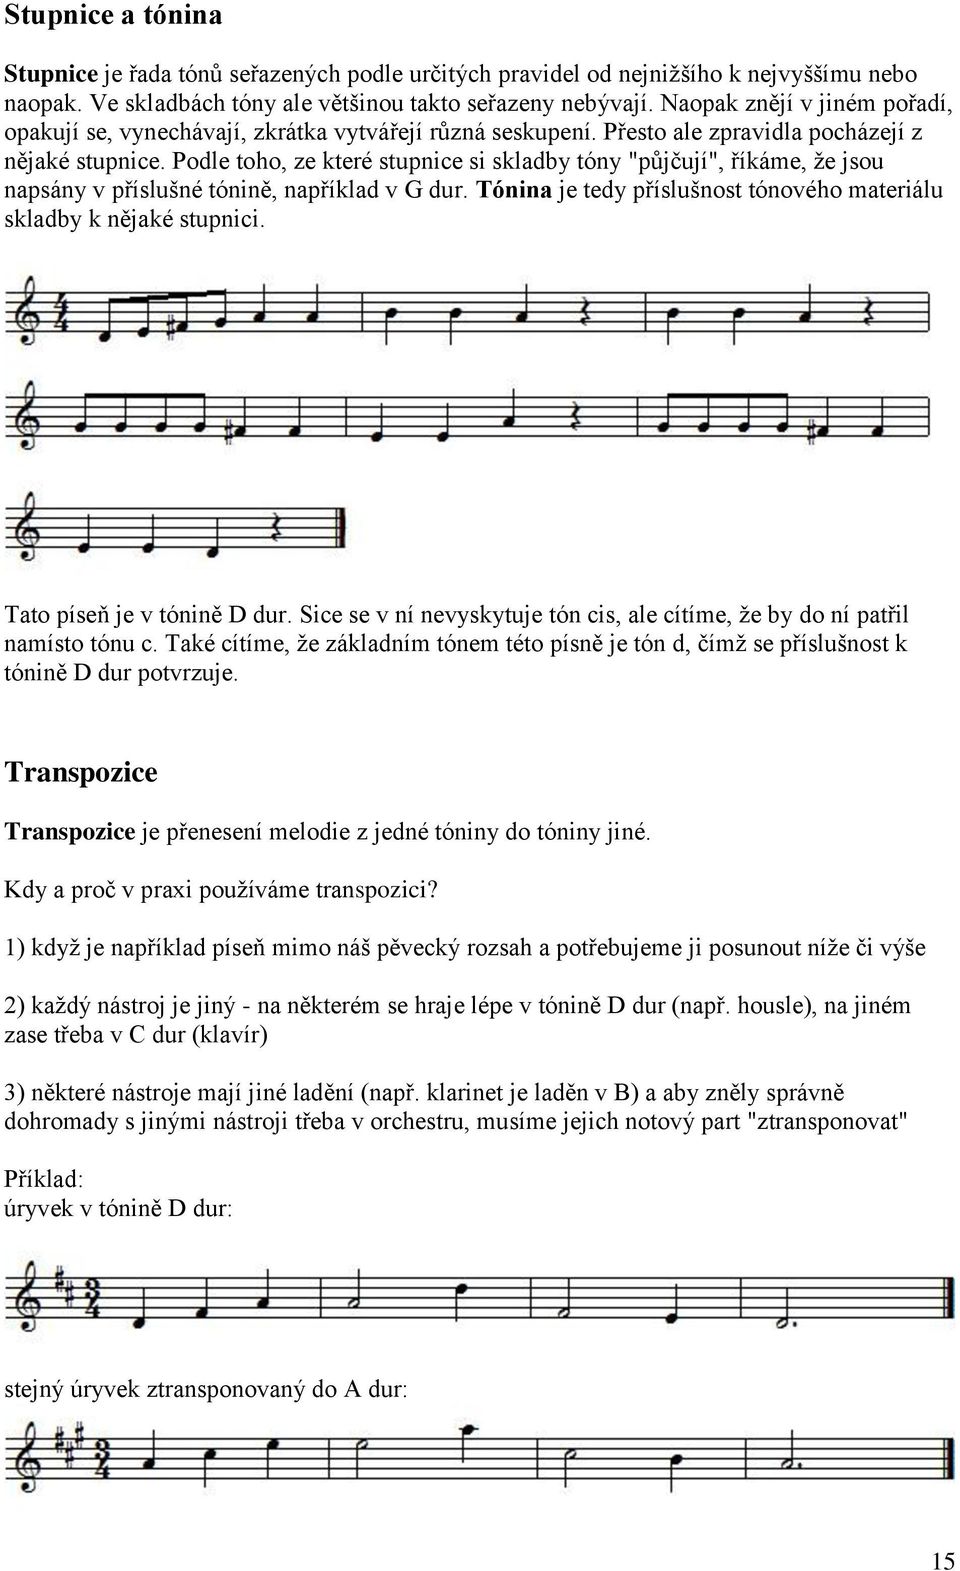 Podle toho, ze které stupnice si skladby tóny "půjčují", říkáme, že jsou napsány v příslušné tónině, například v G dur. Tónina je tedy příslušnost tónového materiálu skladby k nějaké stupnici.